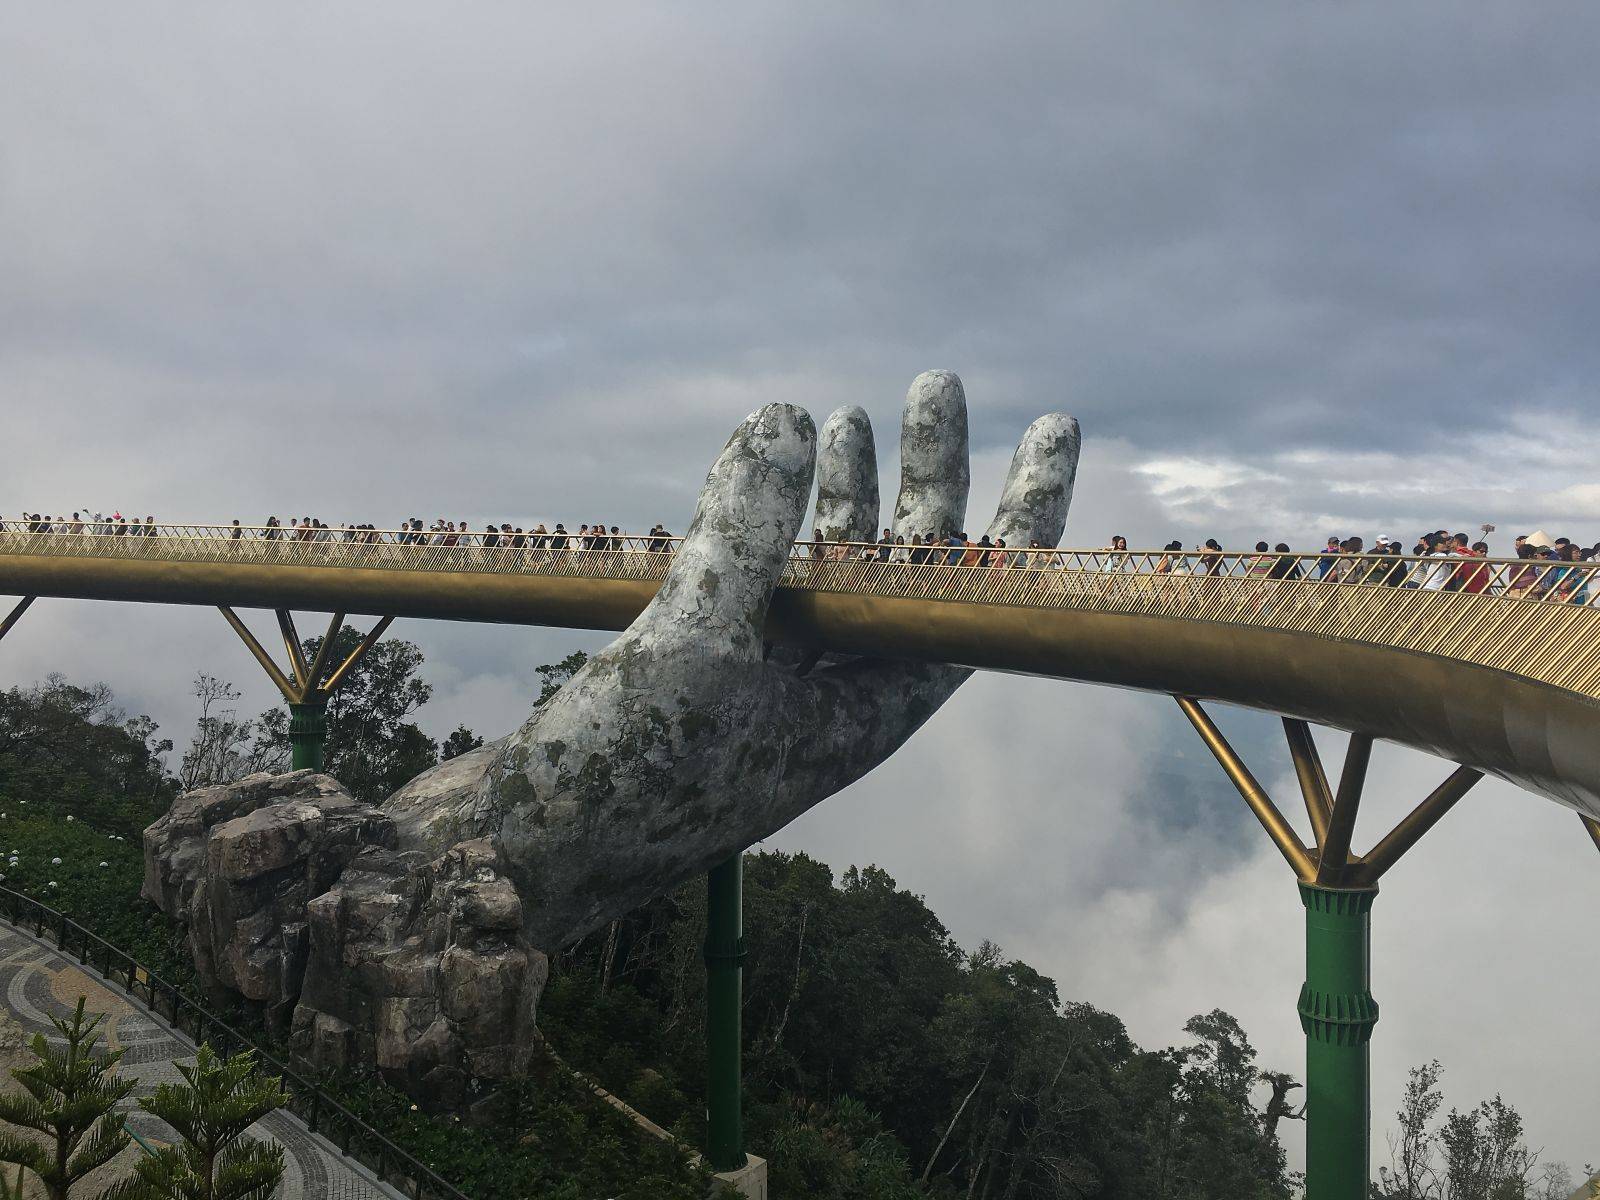 Golden Bridge "In the Hands of God", Ba Na Hills Park, Danang, Vietnam